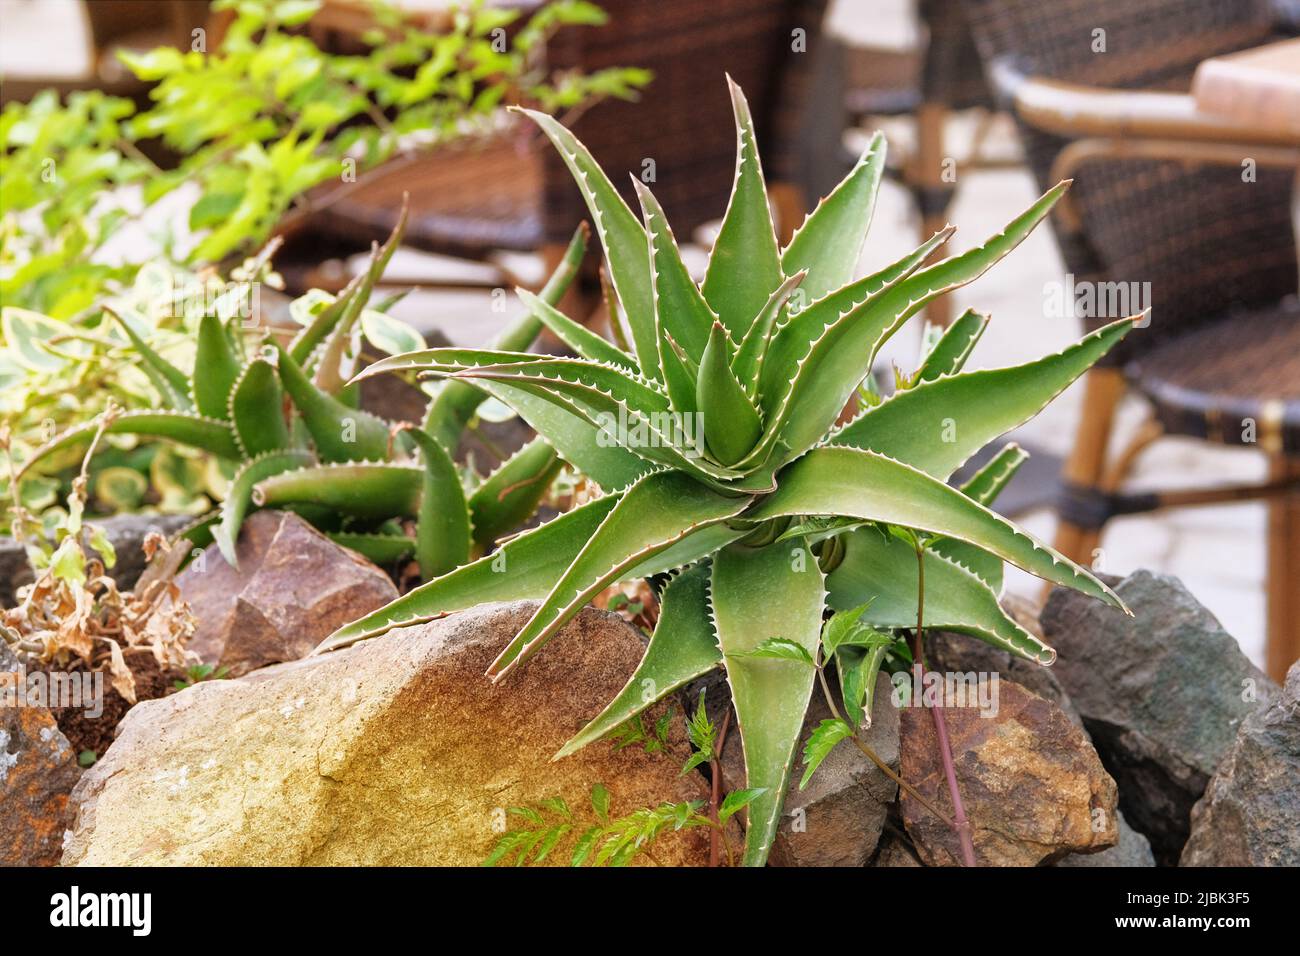 Aloe crescere in una casa verde. Pianta succulenta, avente una rosetta di foglie carnose dentate e fiori a campana o tubolari su steli lunghi. Foto Stock